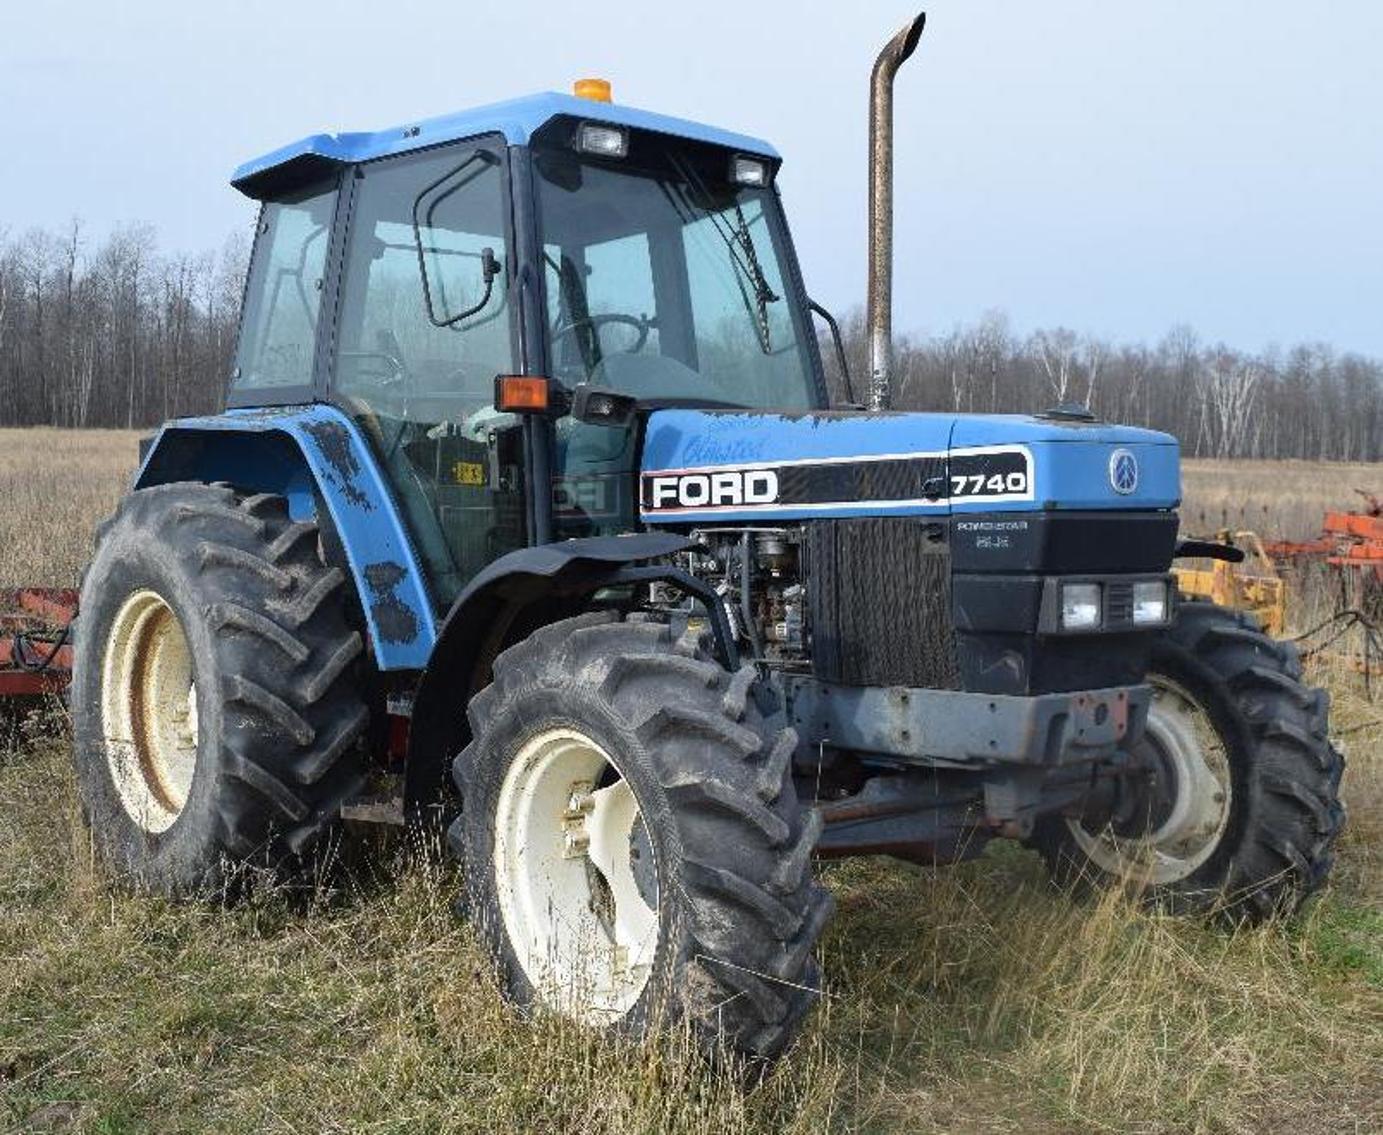 Tractors, Construction and Farm Equipment